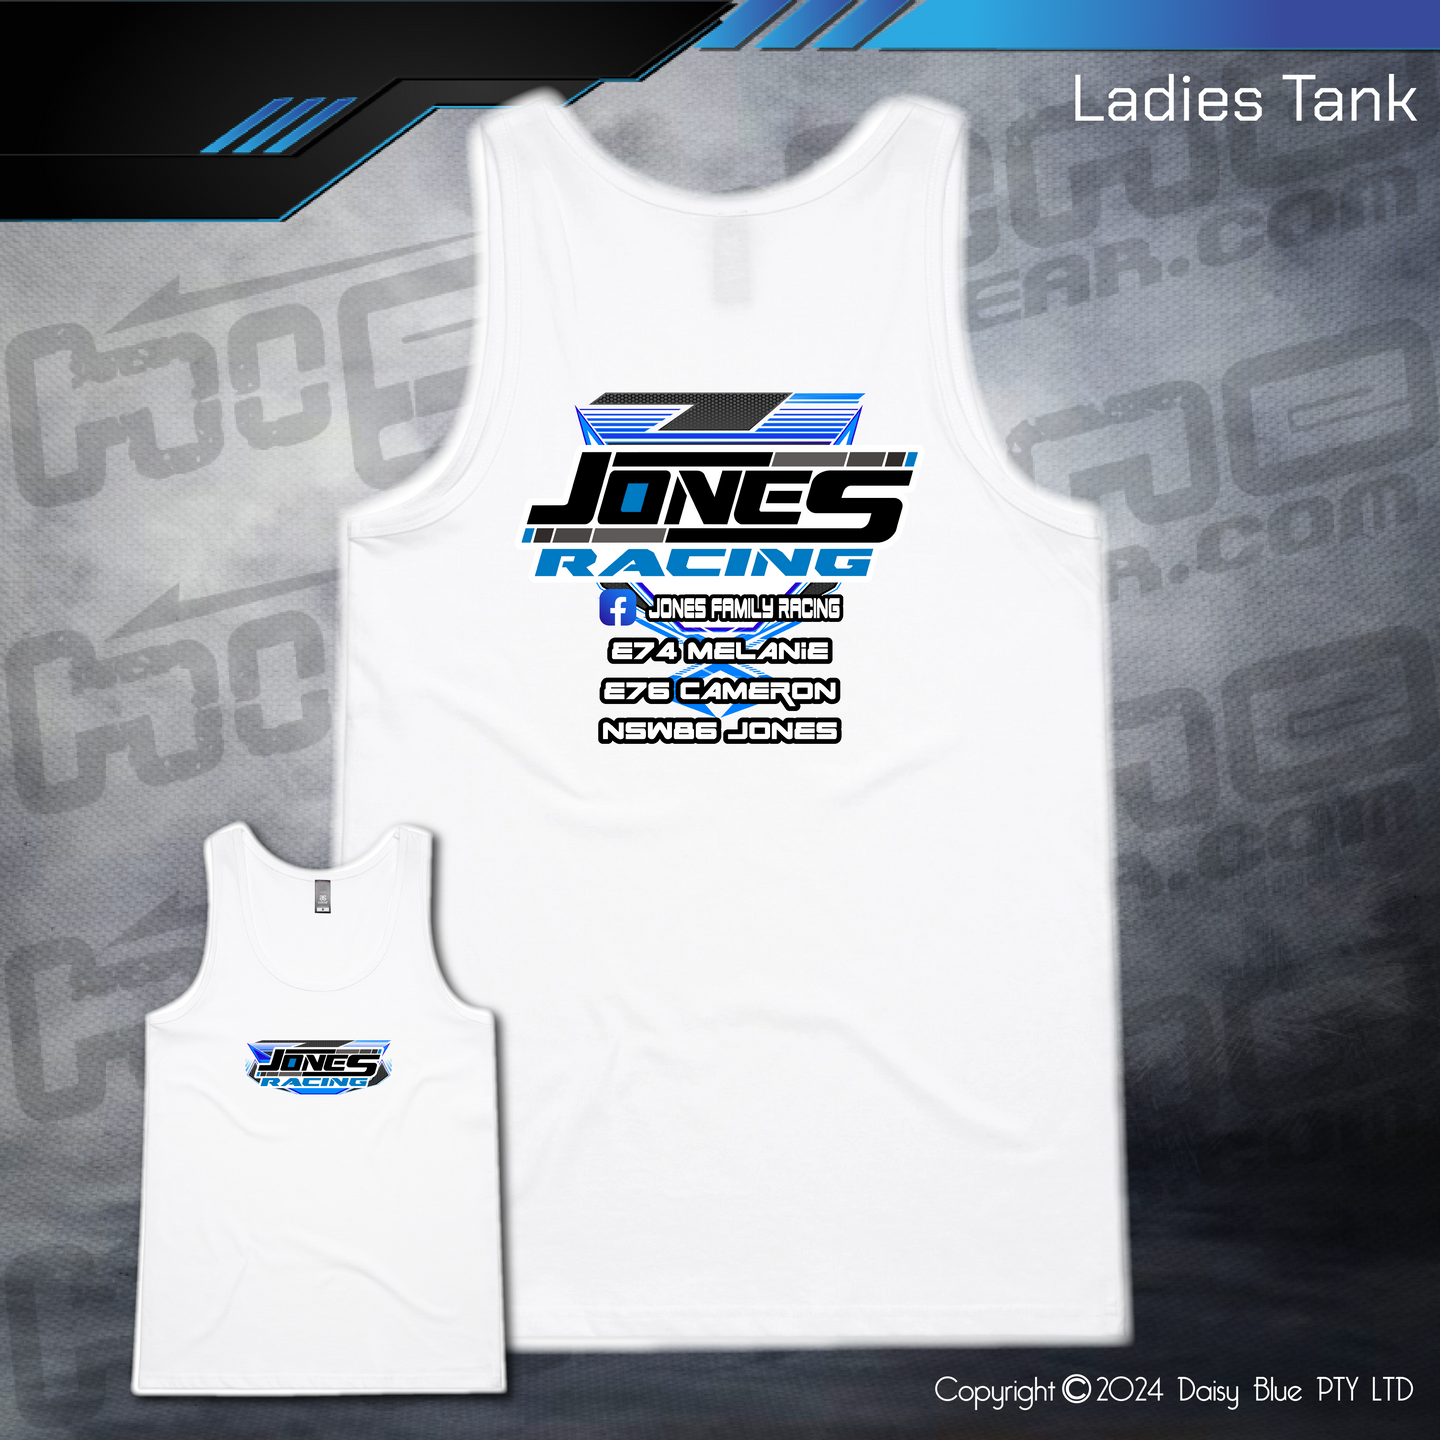 Ladies Tank - Jones Racing